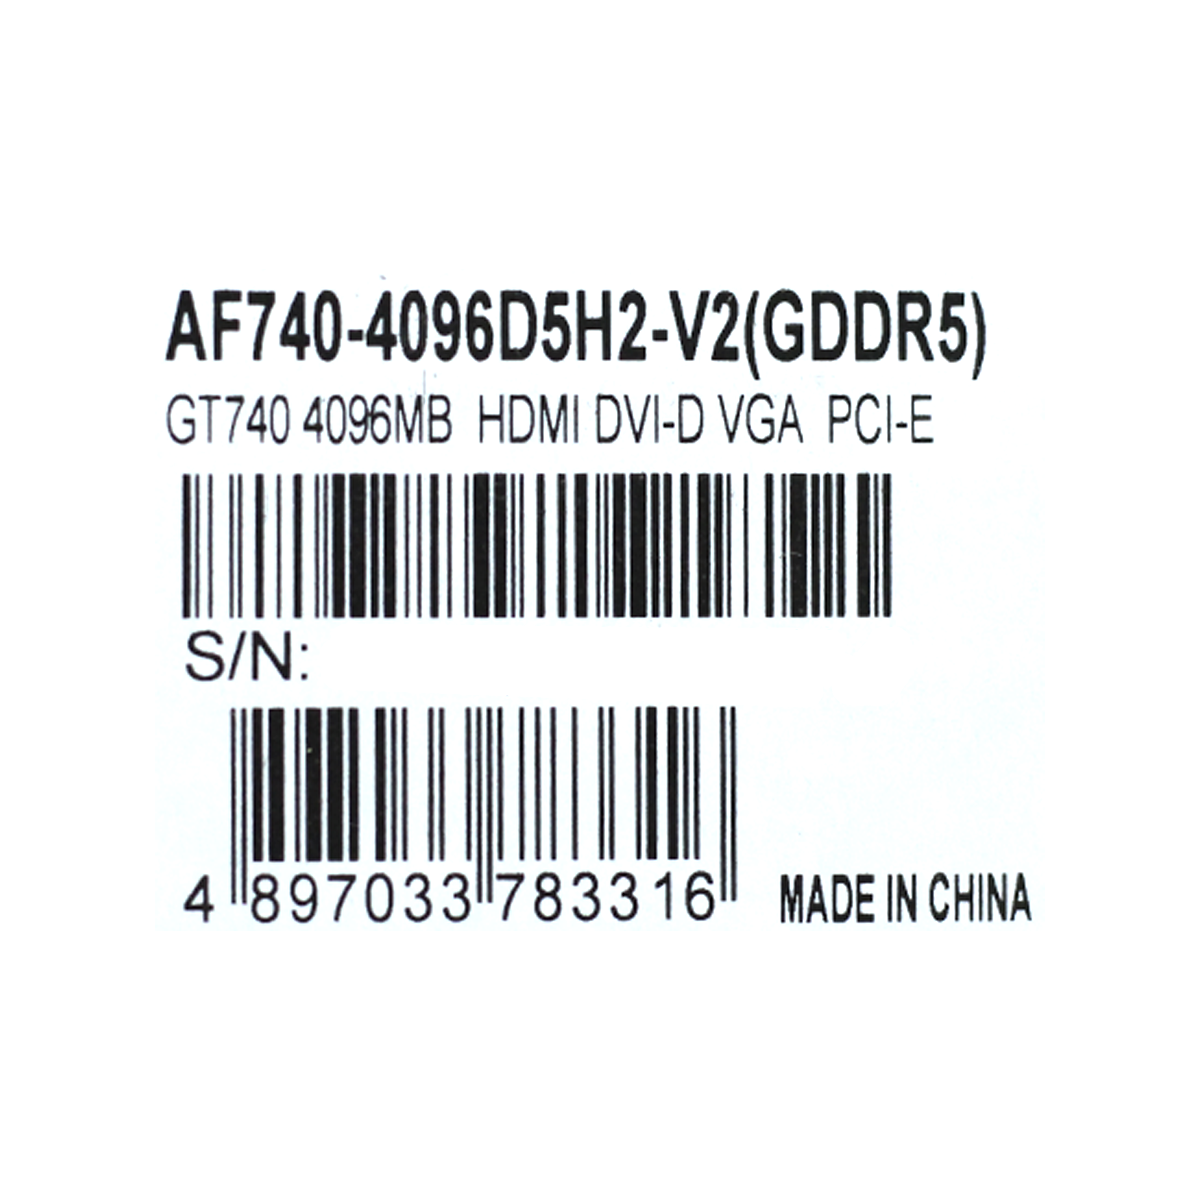 Placa de Video Afox GT-740 4GB DDR3 AF740-4096D3L3 no Paraguai - Atacado  Games - Paraguay